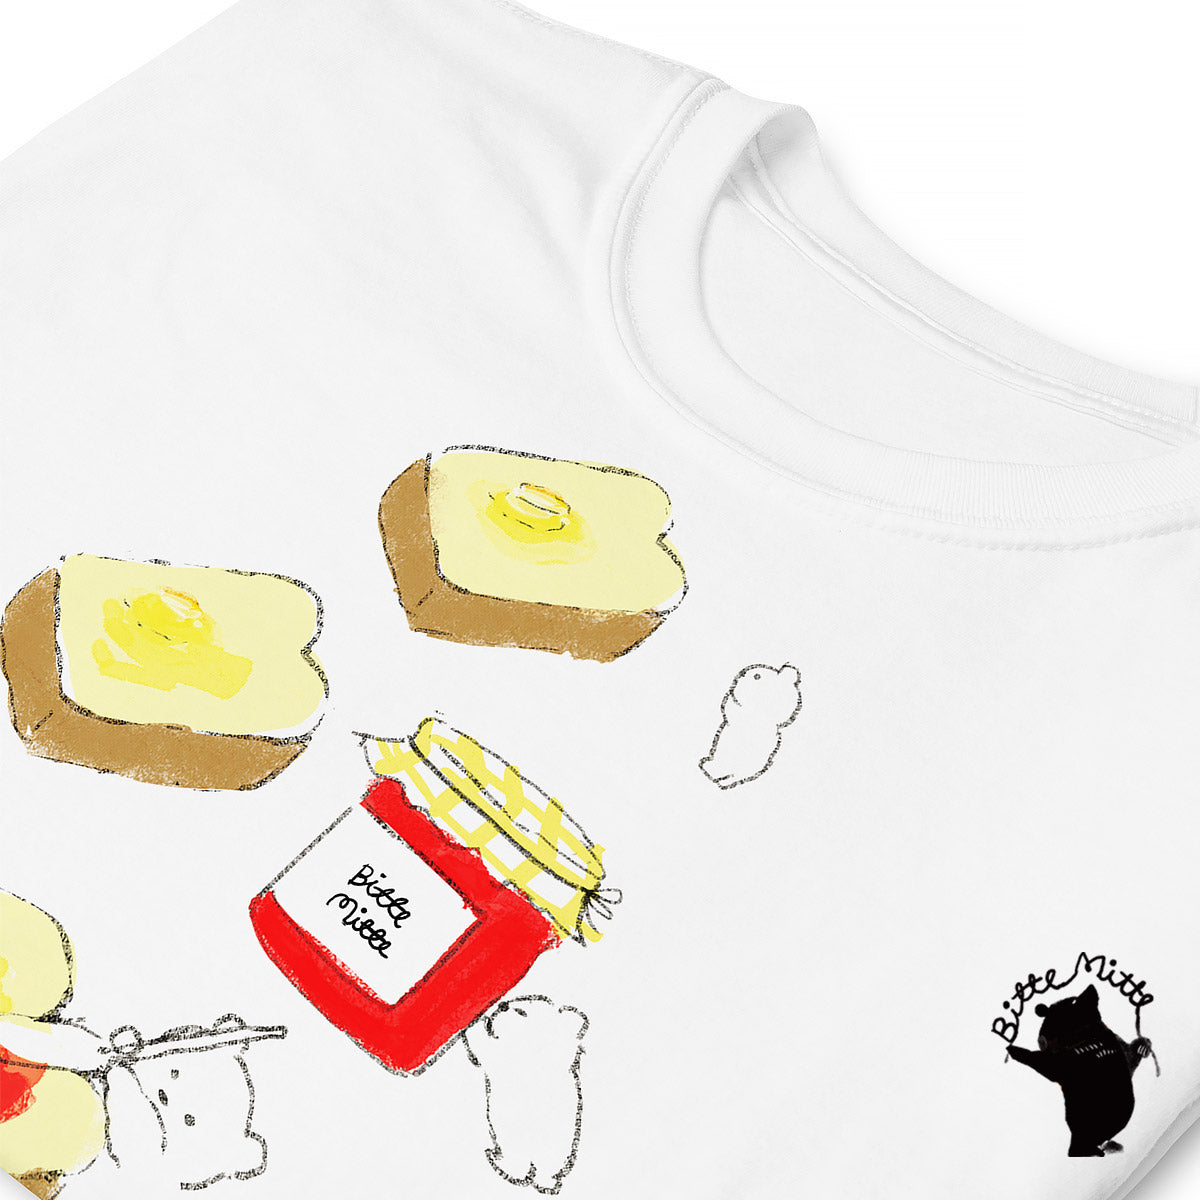 Tシャツ かわいい デザイン おしゃれ 大人可愛い 人気 通販 食パン【半袖/レディース/メンズ】